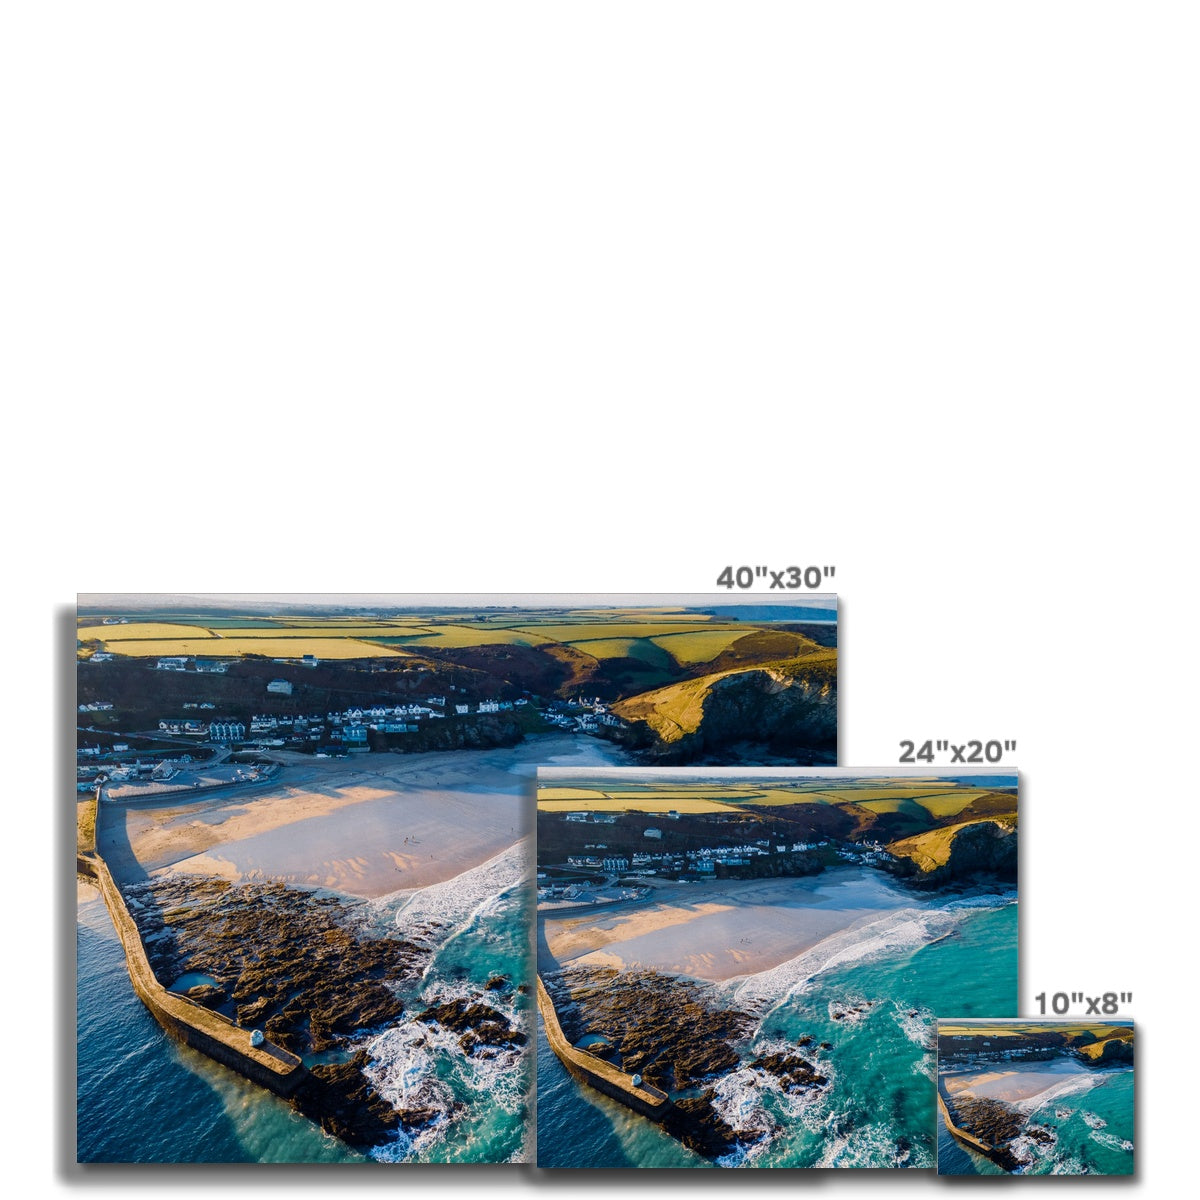 portreath harbour canvas sizes